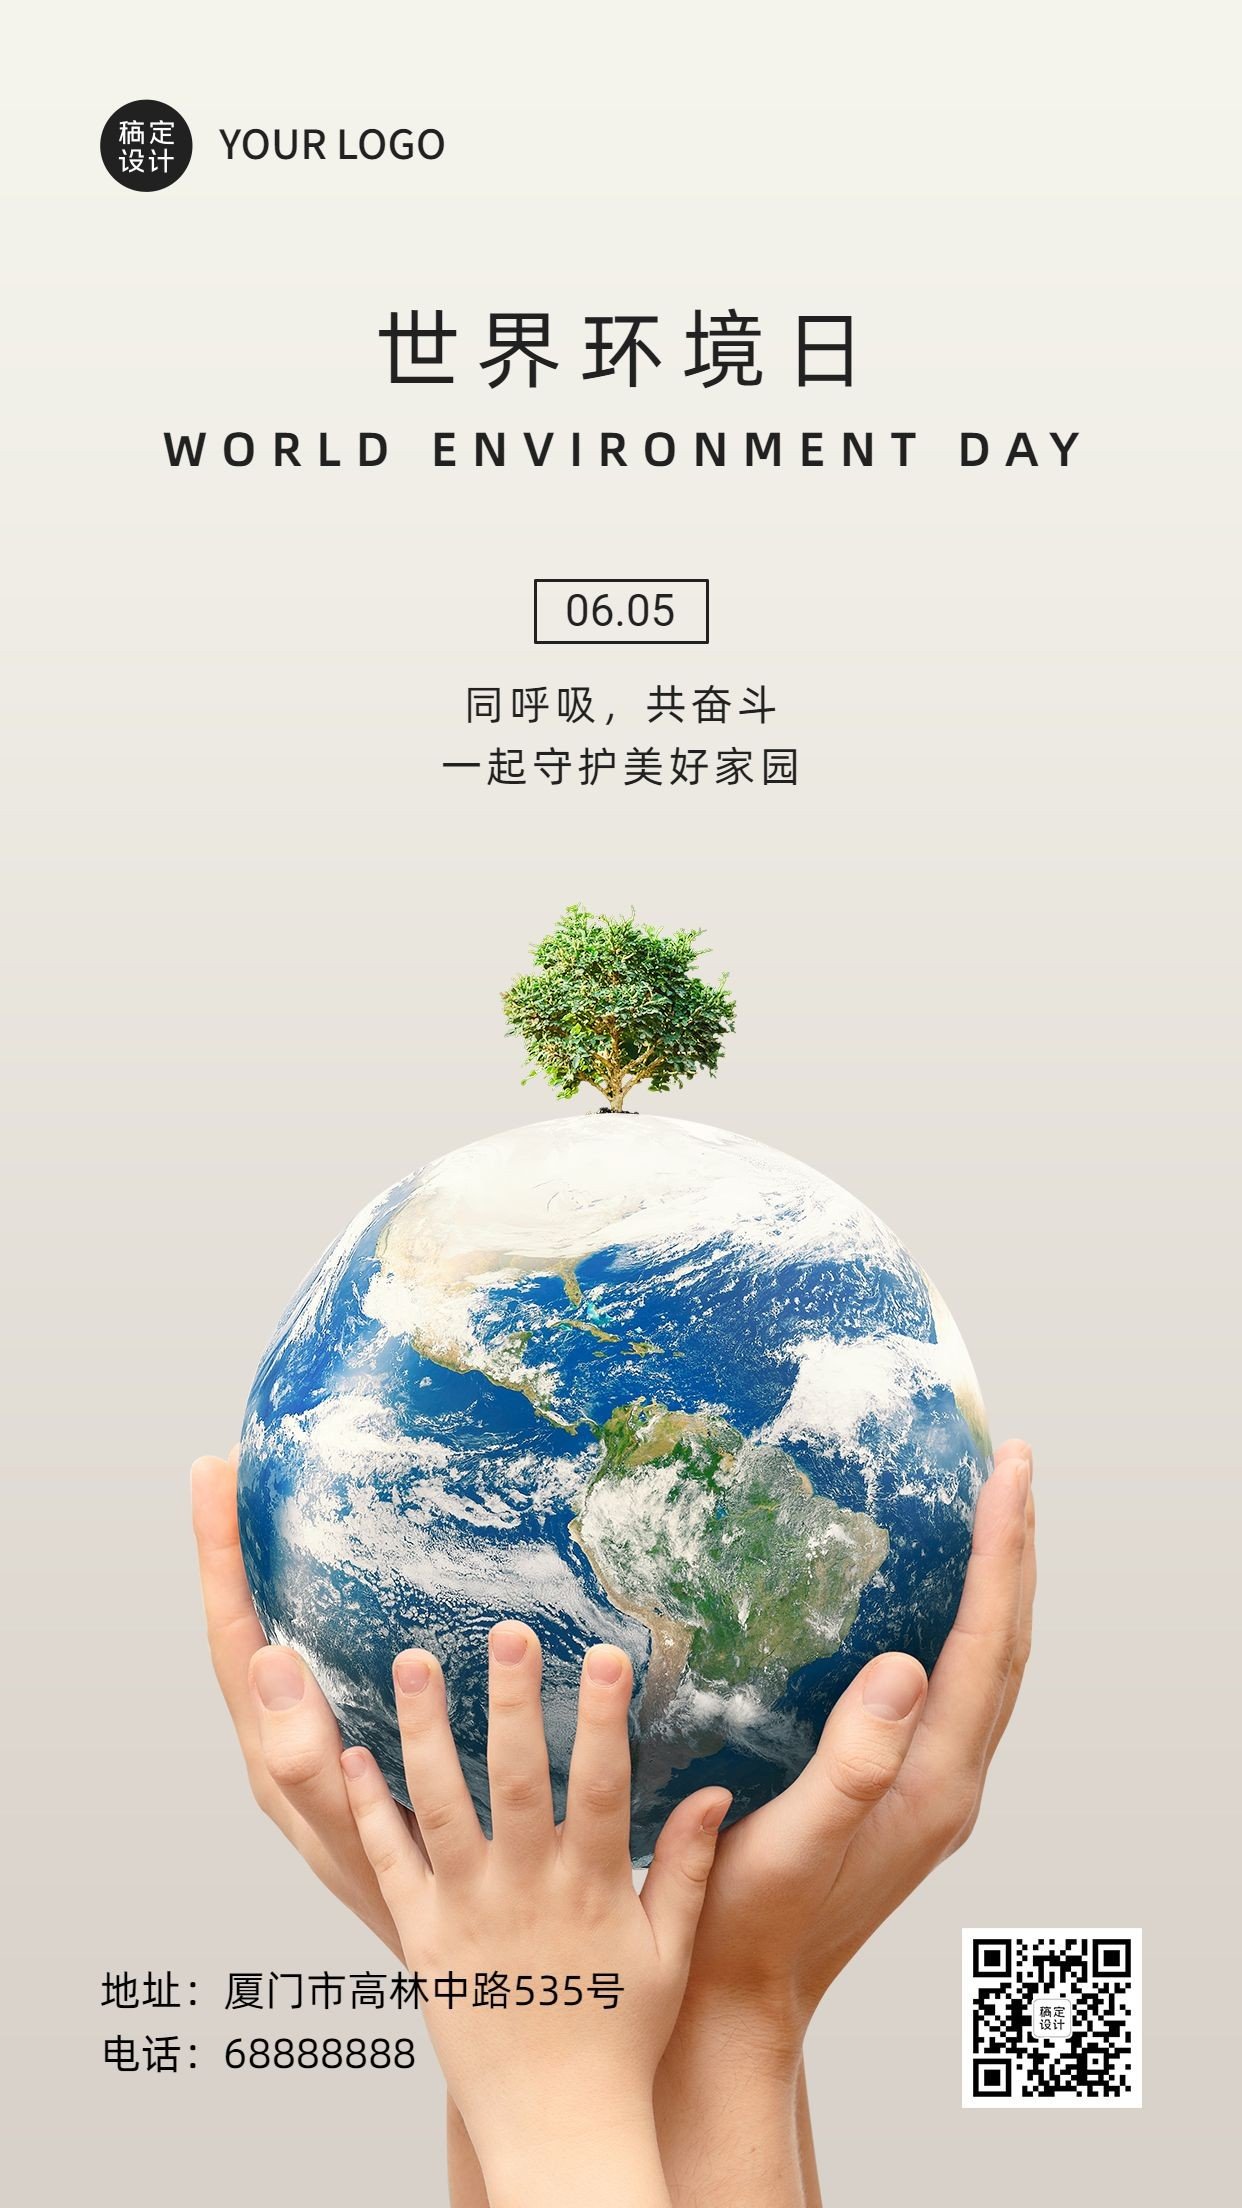 世界环境日保护生态环境手机海报预览效果